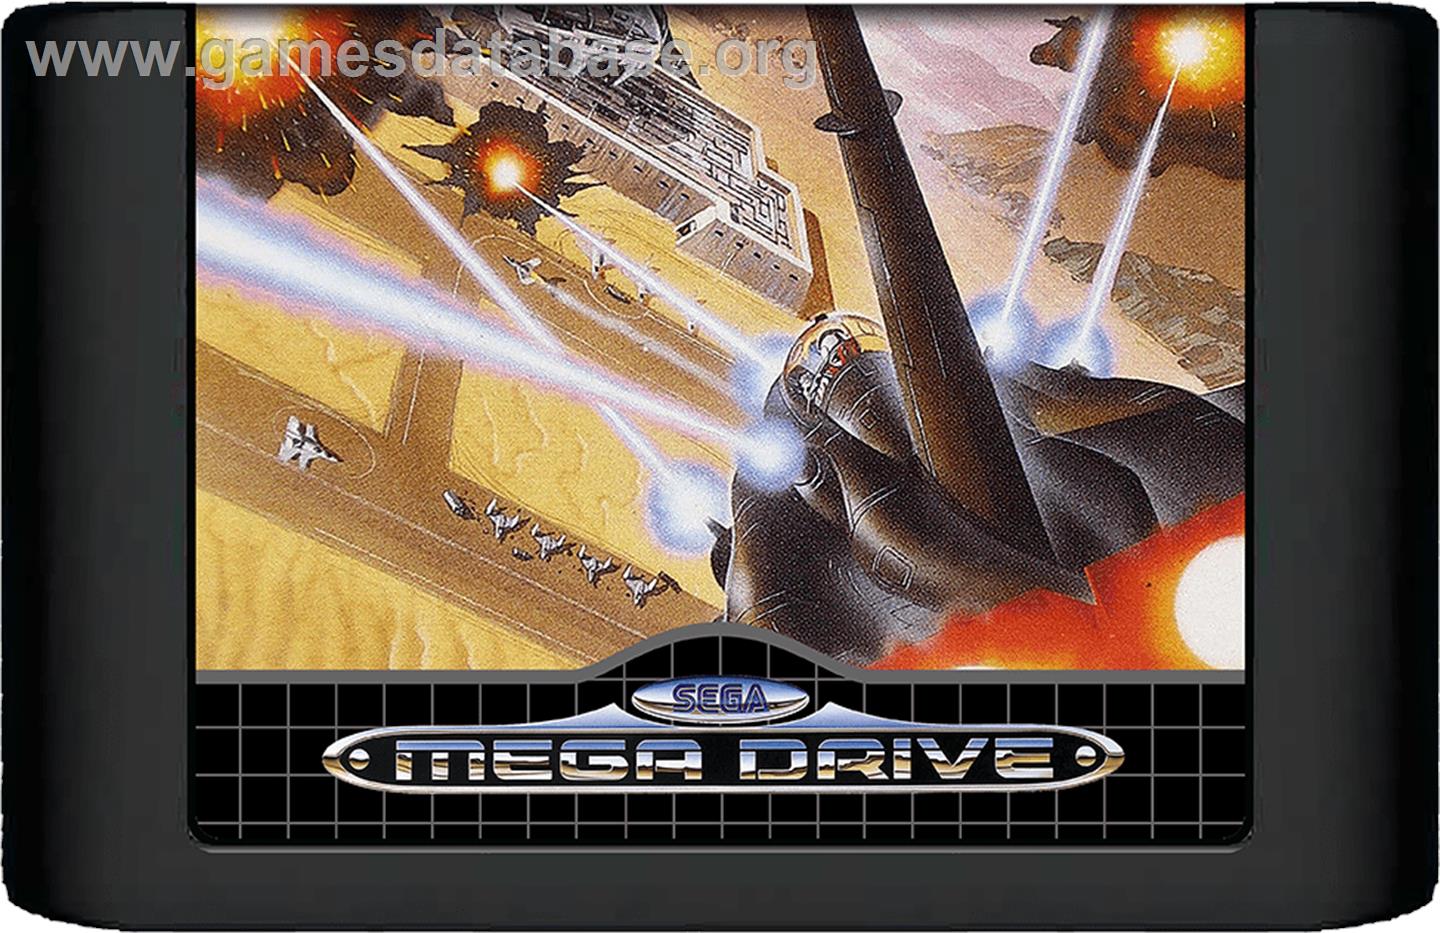 Thunder Force II - Sega Genesis - Artwork - Cartridge